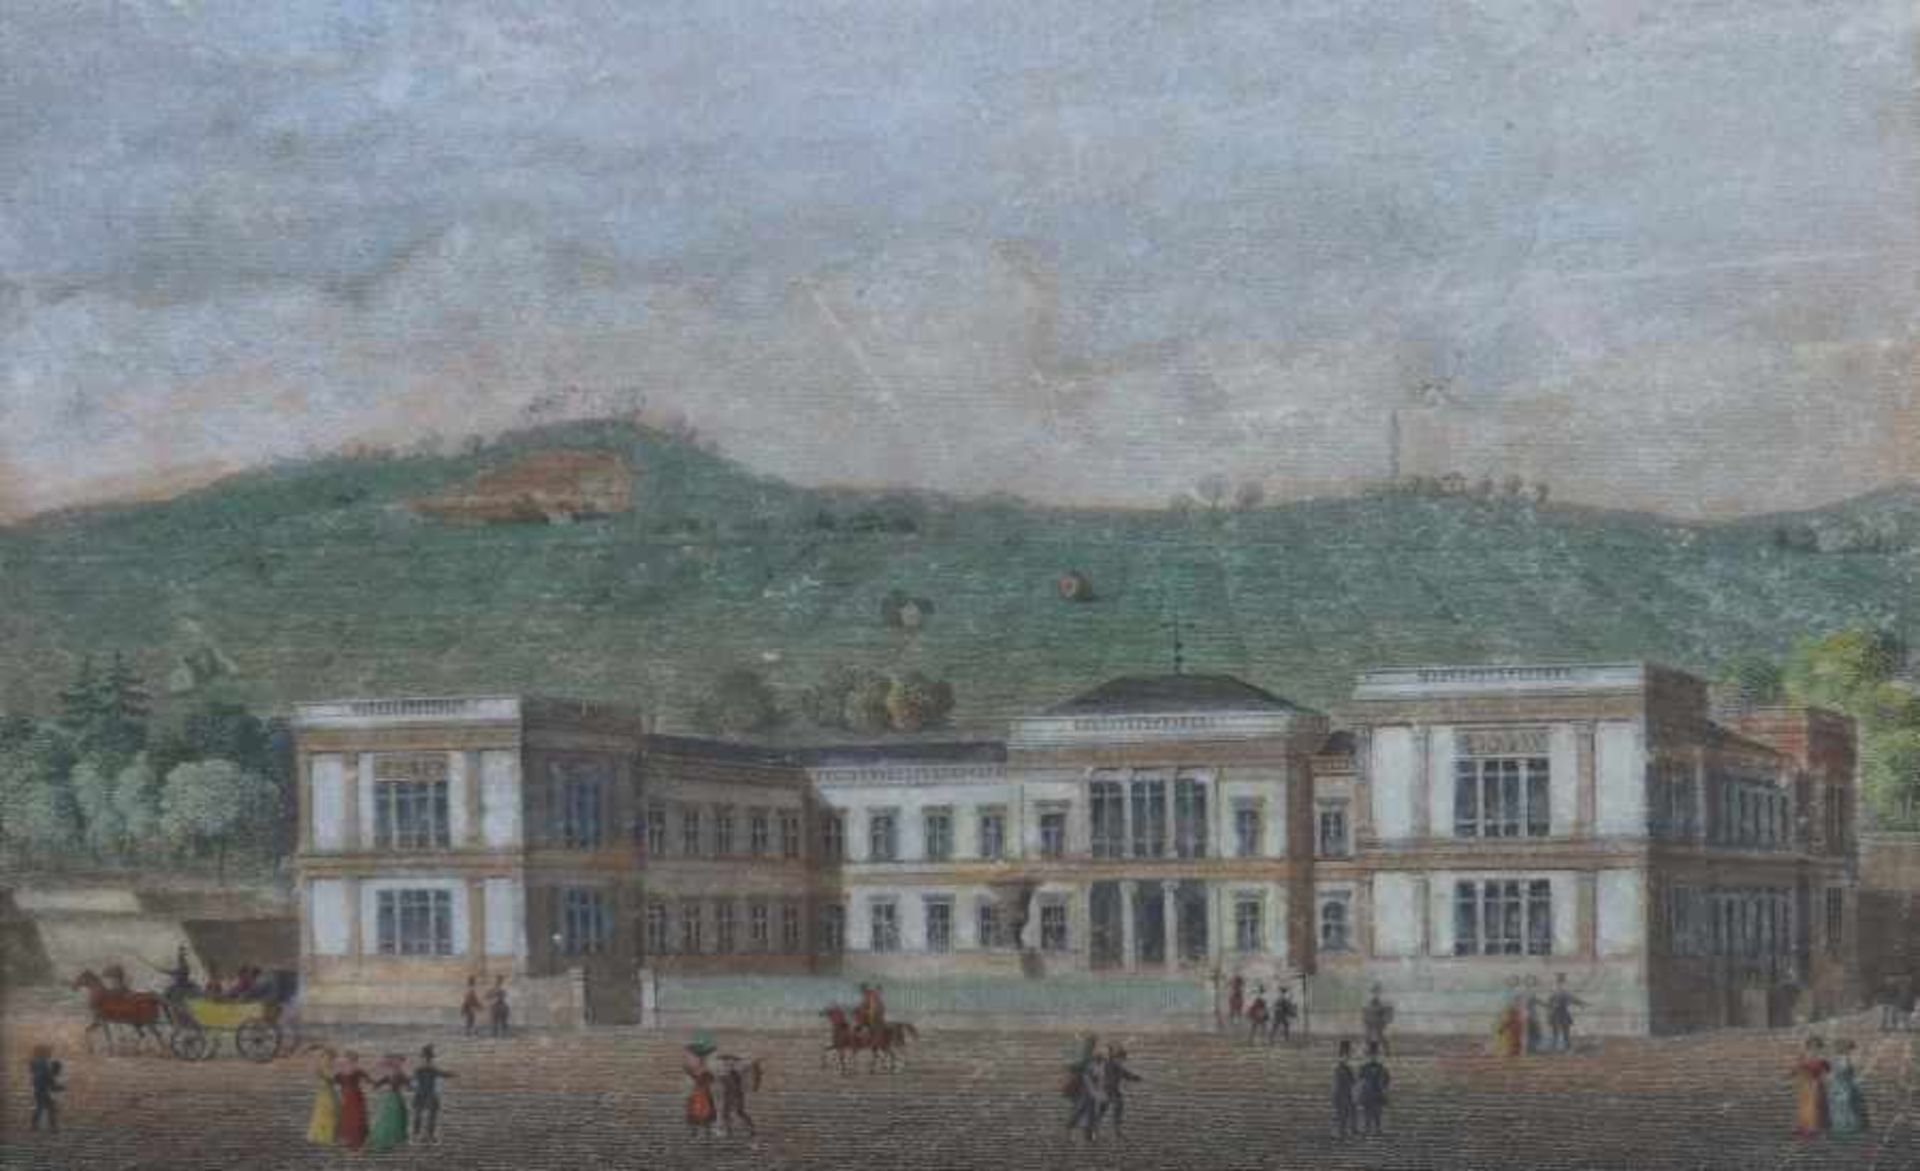 Pobuda, WenzelBöhmen 1797 - 1847, Stahlstecher und Lithograph. "Kunstgebäude", Teilansicht der